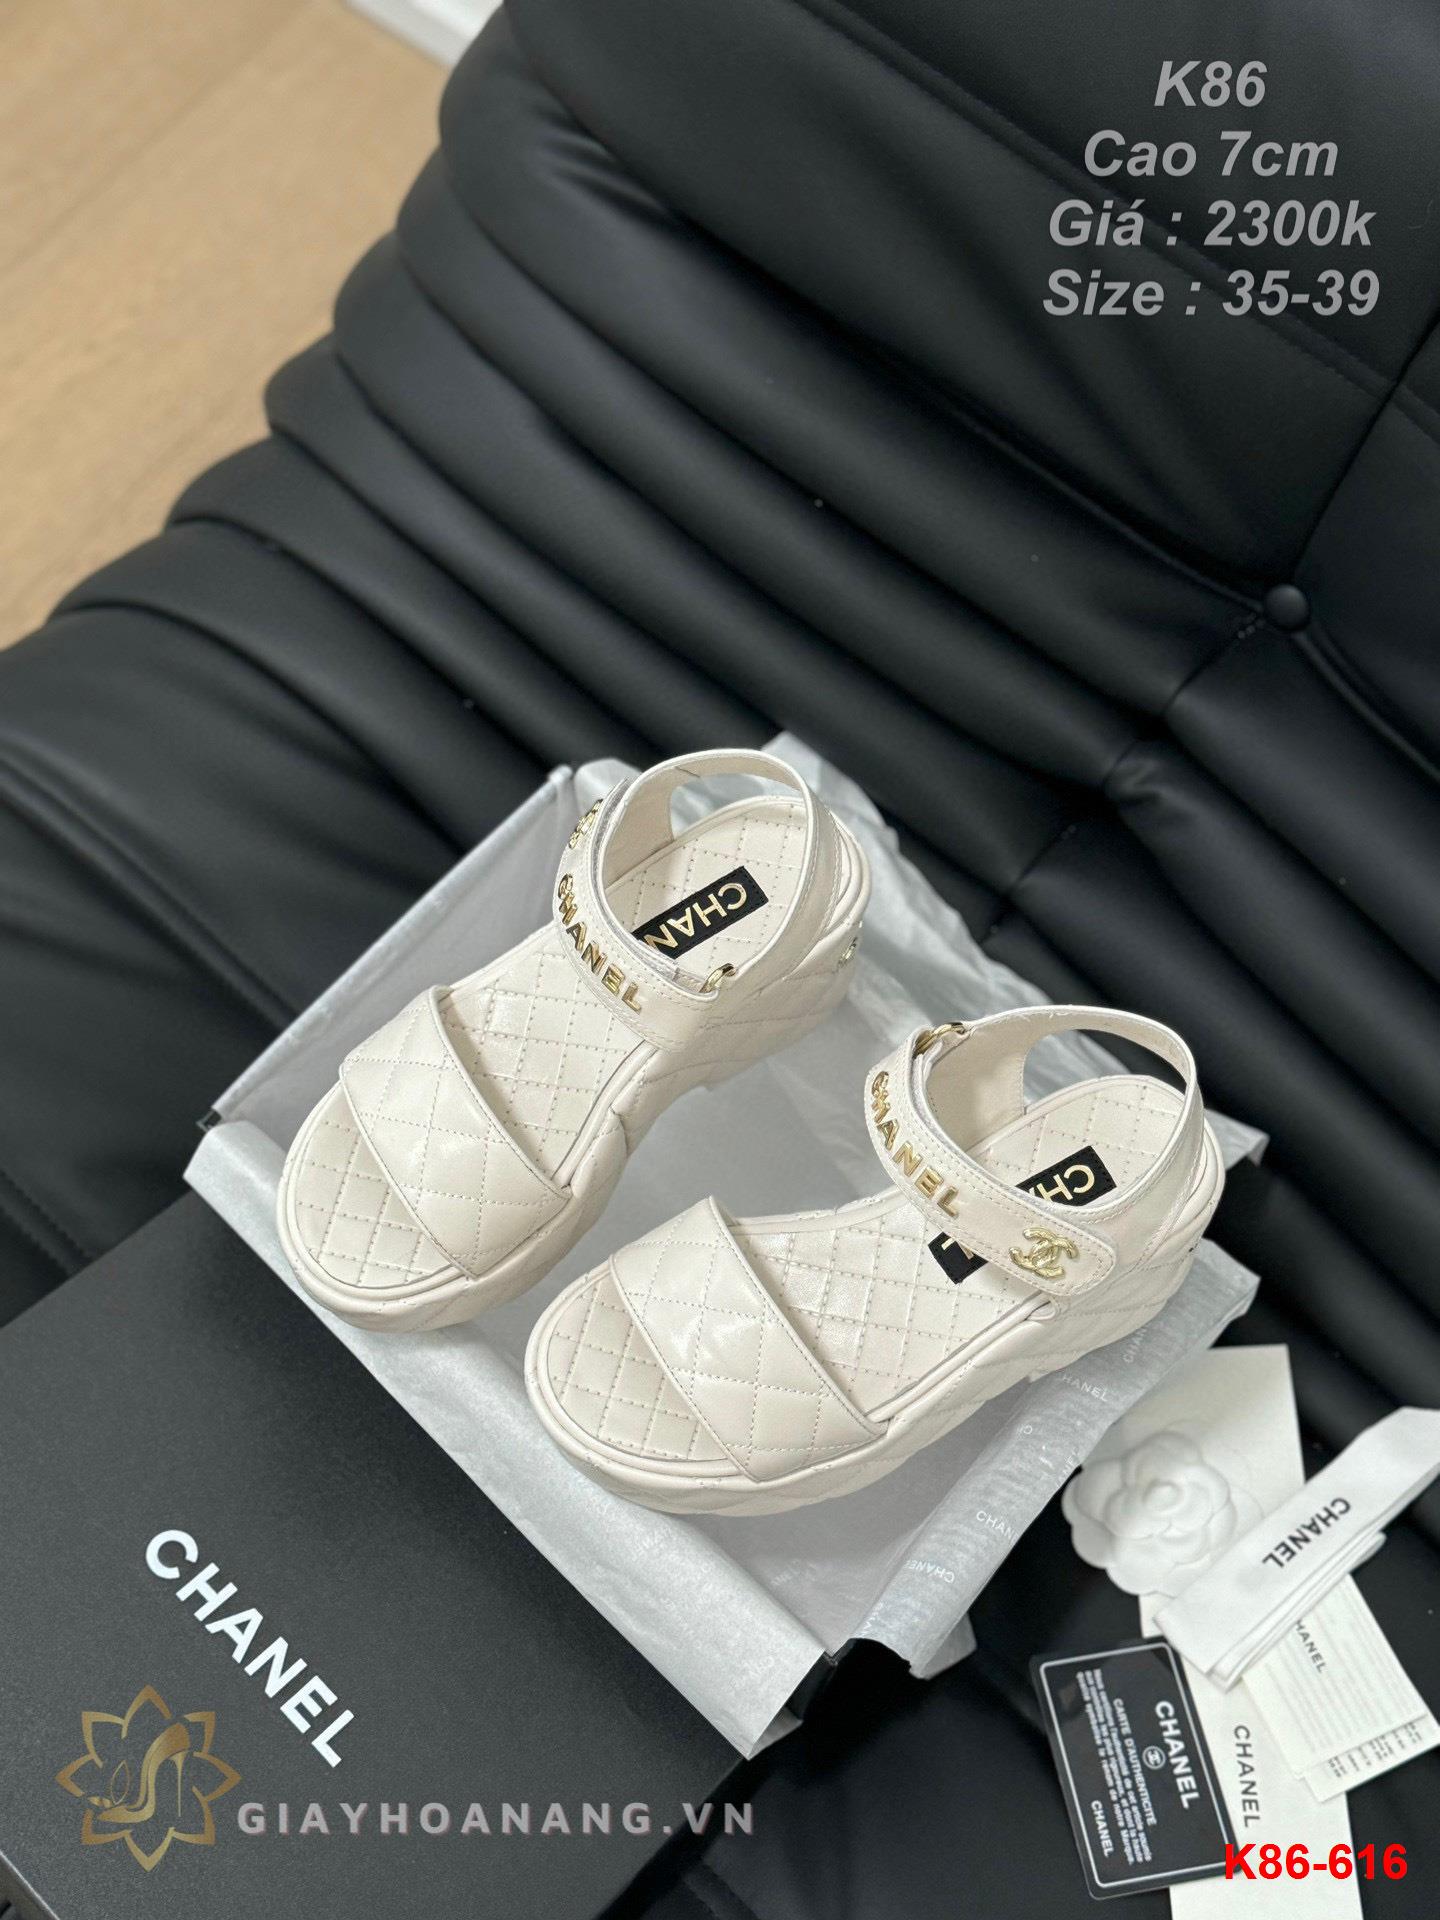 K86-616 Chanel sandal cao gót 7cm siêu cấp